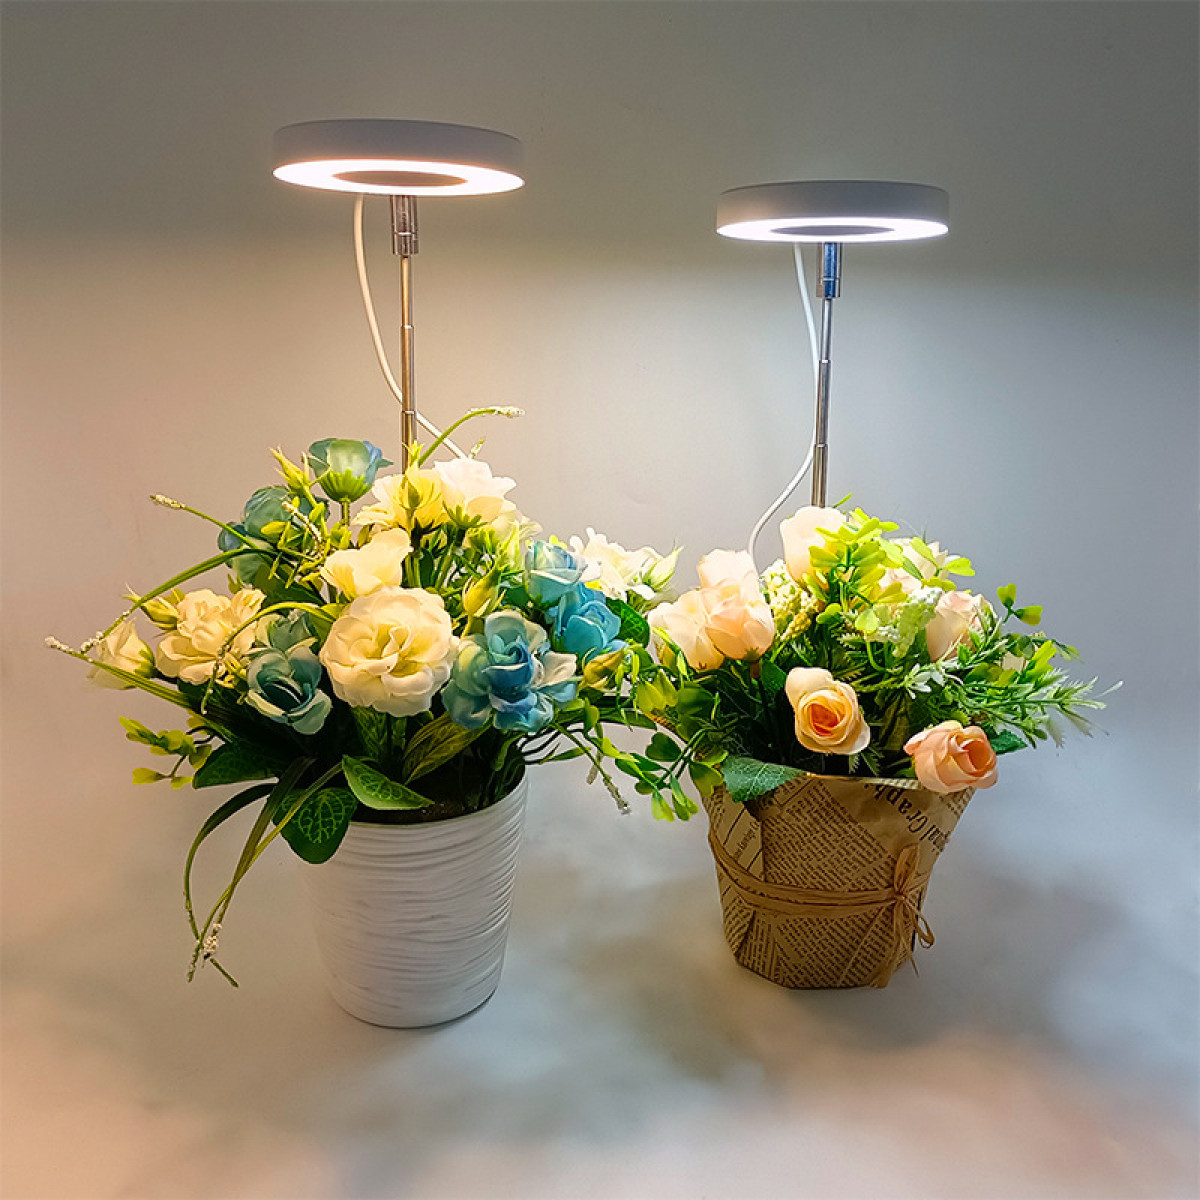 INF Kulturlampe Pflanzenlampe für warmweiß/weiß Pflanzenbeleuchtung Topfpflanzen